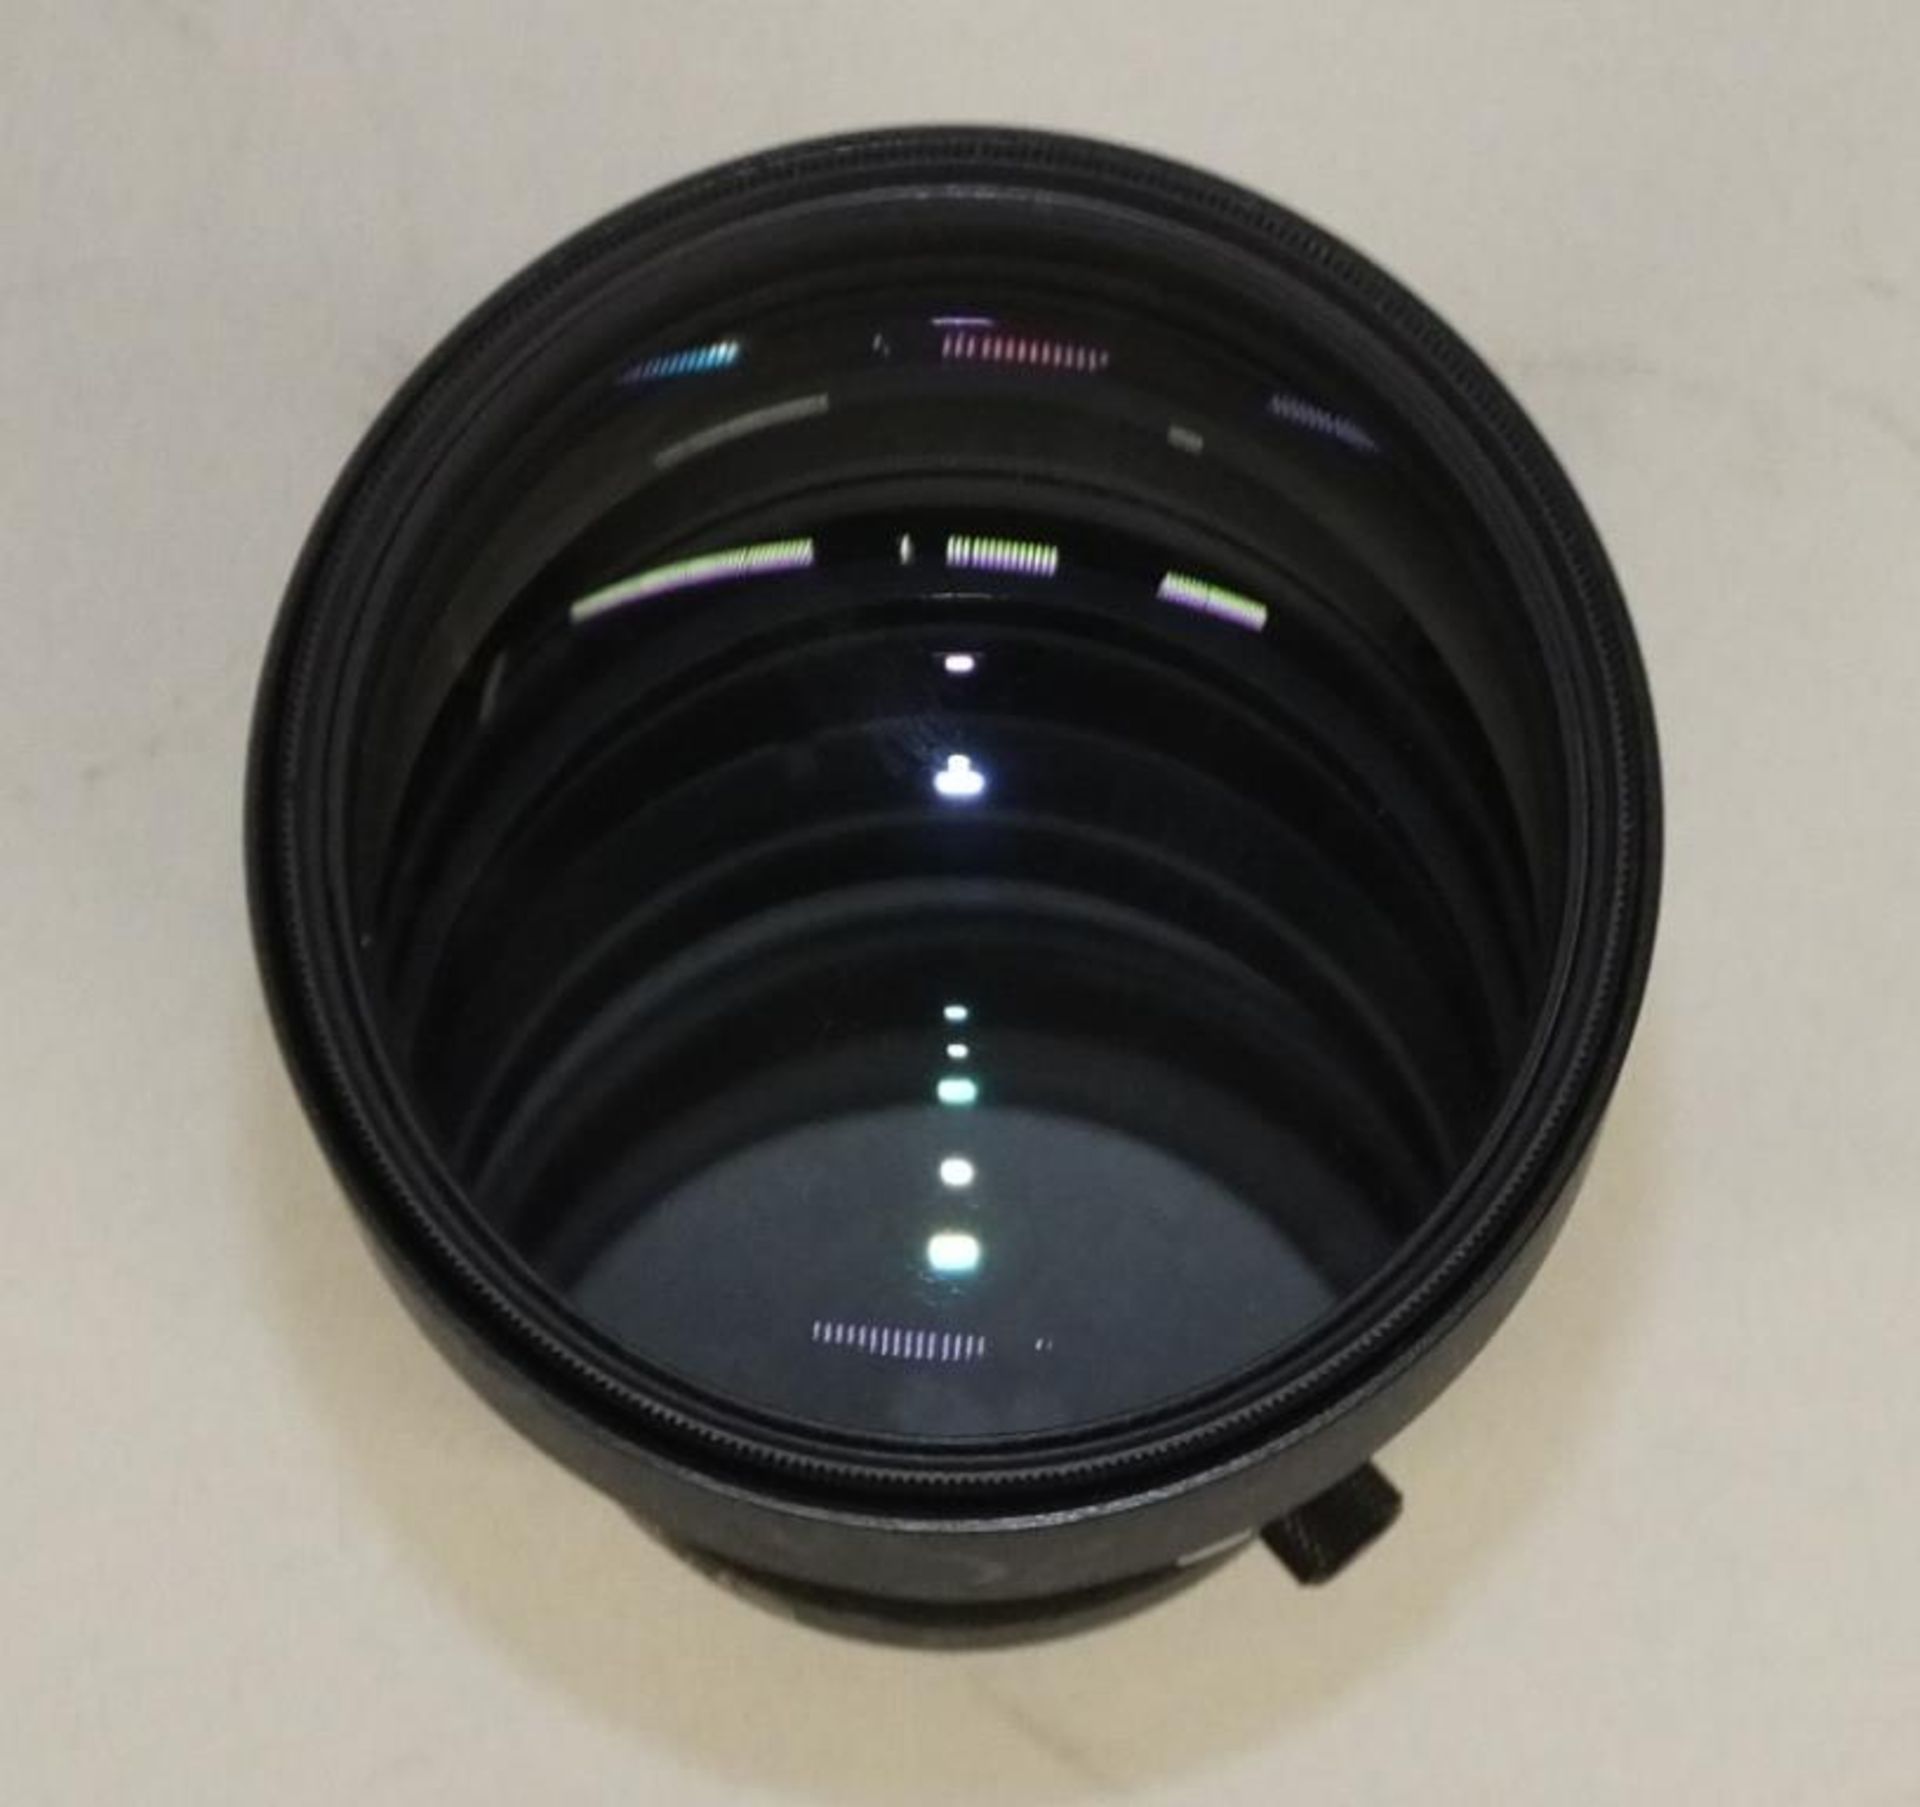 Nikon ED AF Nikkor 300mm 1:4 Lens with Nikon L37c 82mm Filter and Nikon CL-42 Case - Image 6 of 8